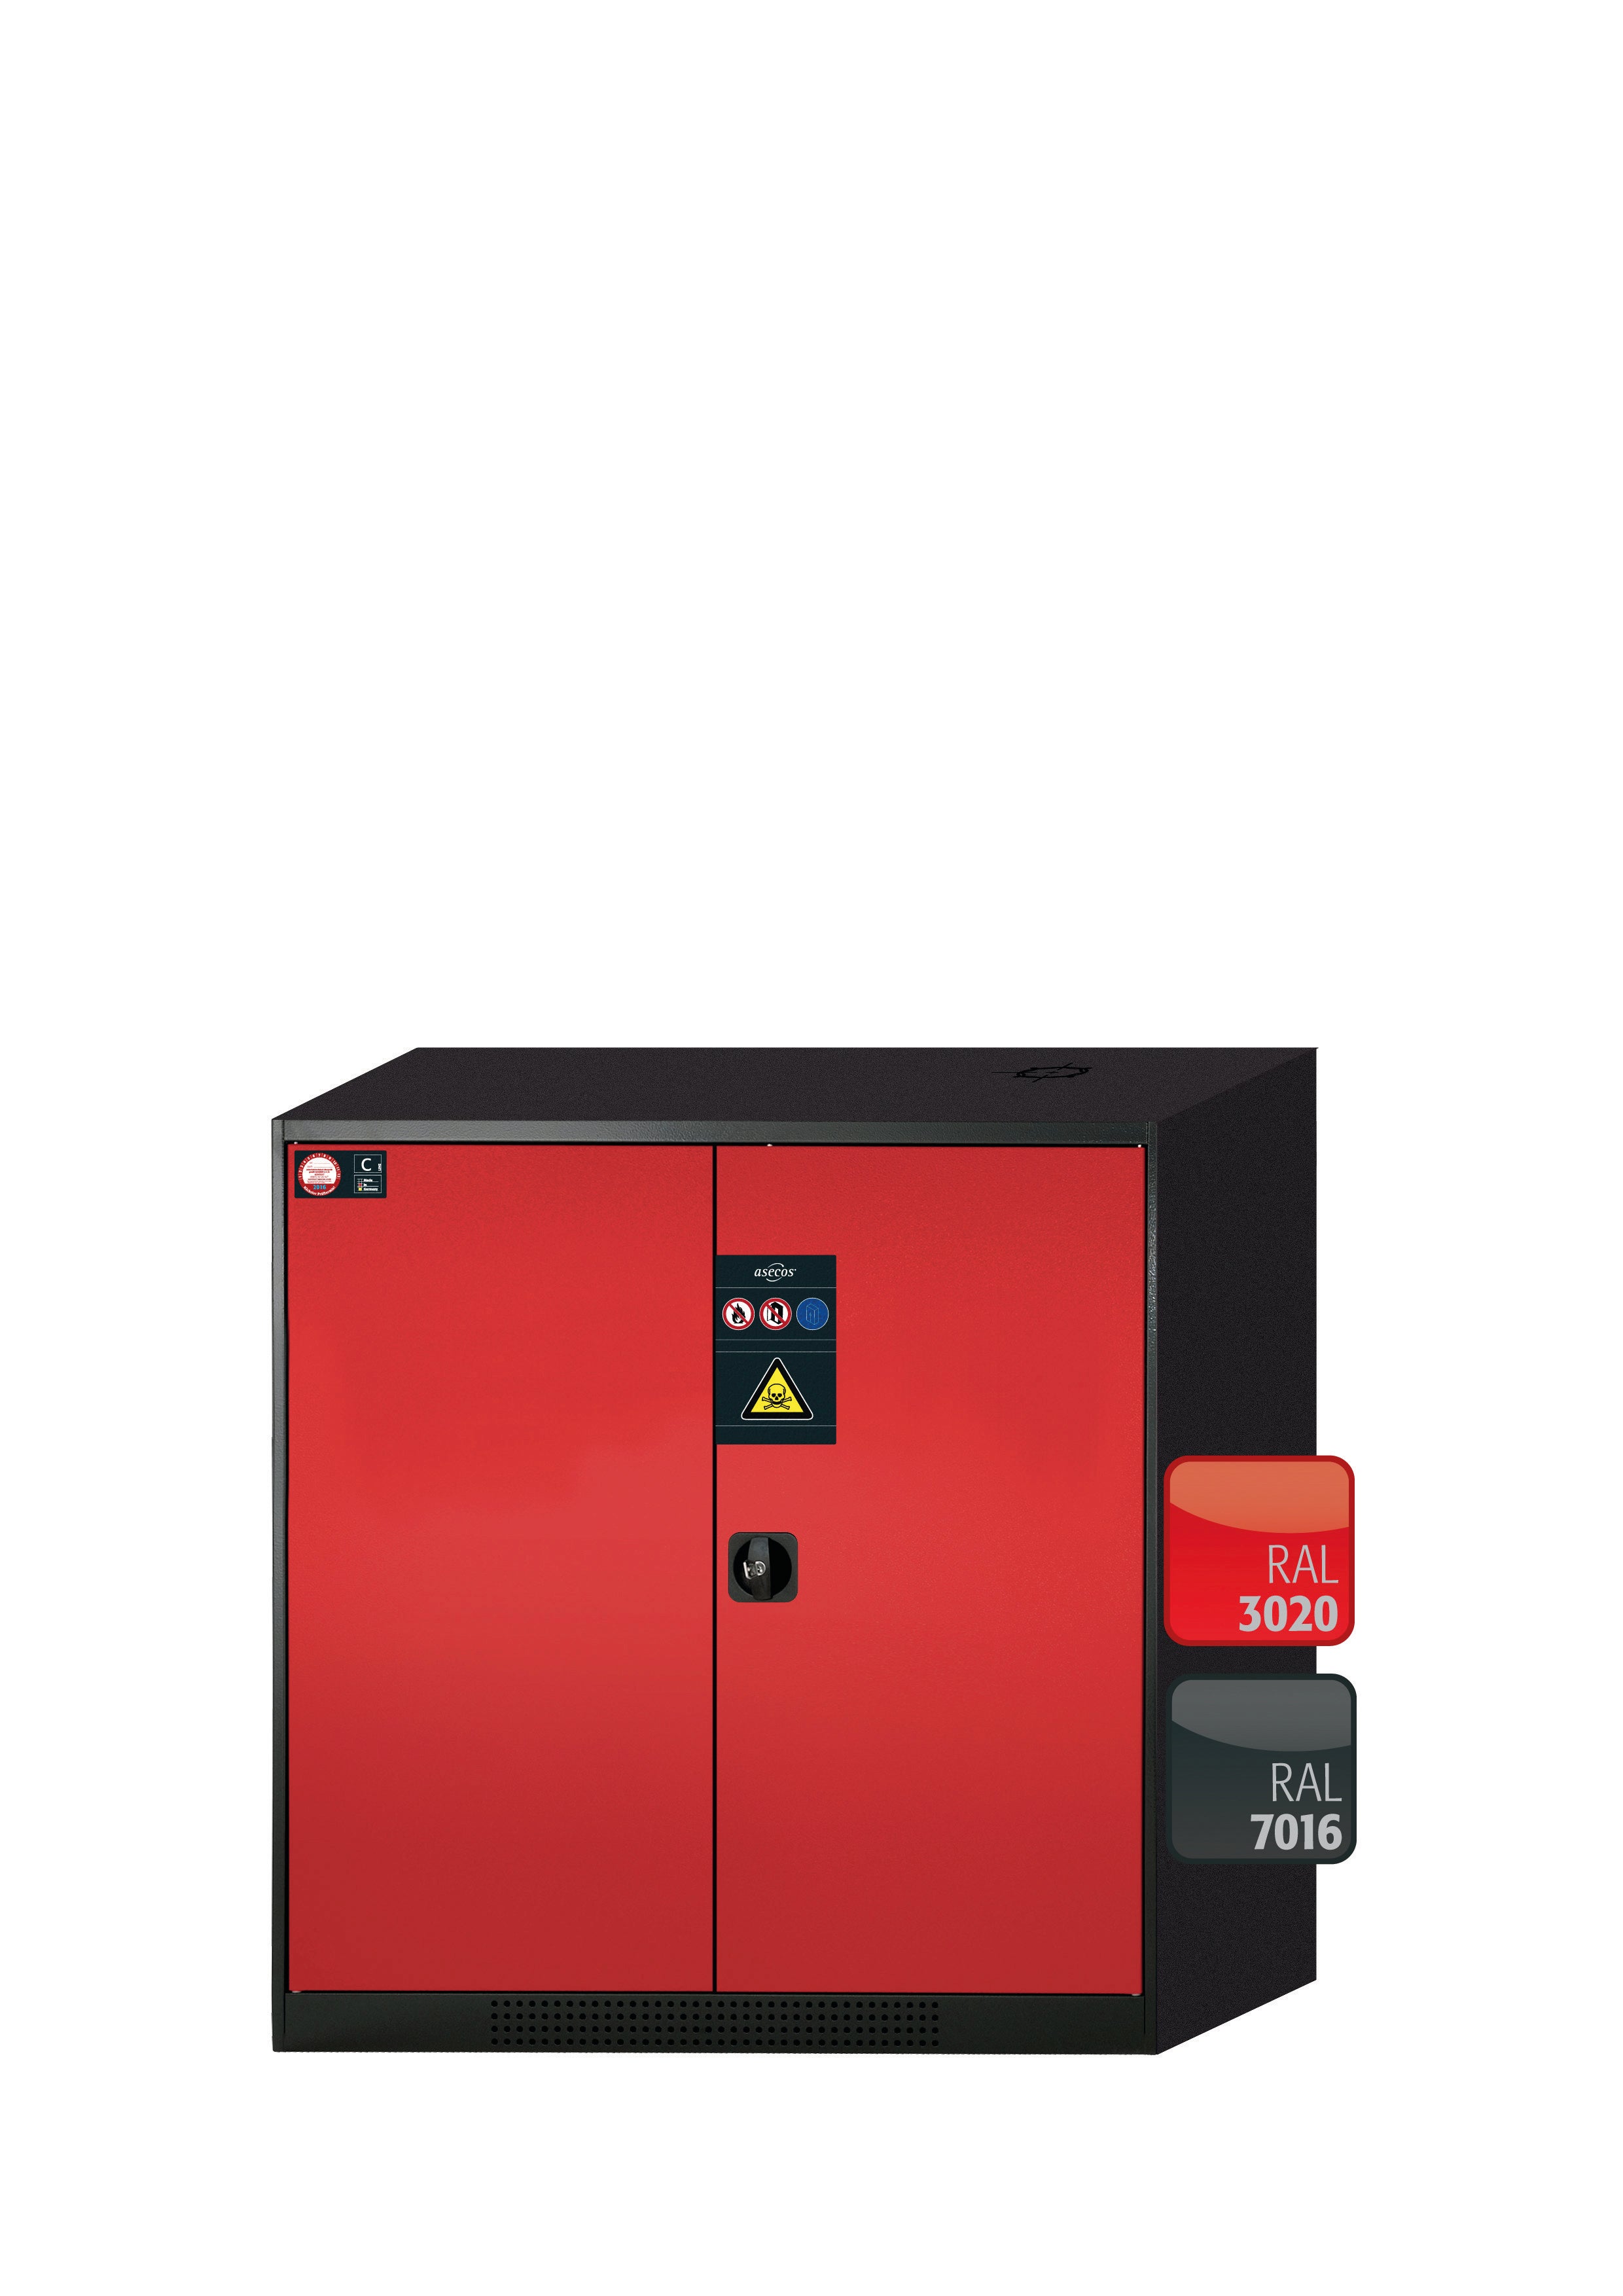 Armoire chimique CS-CLASSIC modèle CS.110.105 en rouge signalisation RAL 3020 avec 2x étagères standard (tôle d'acier)